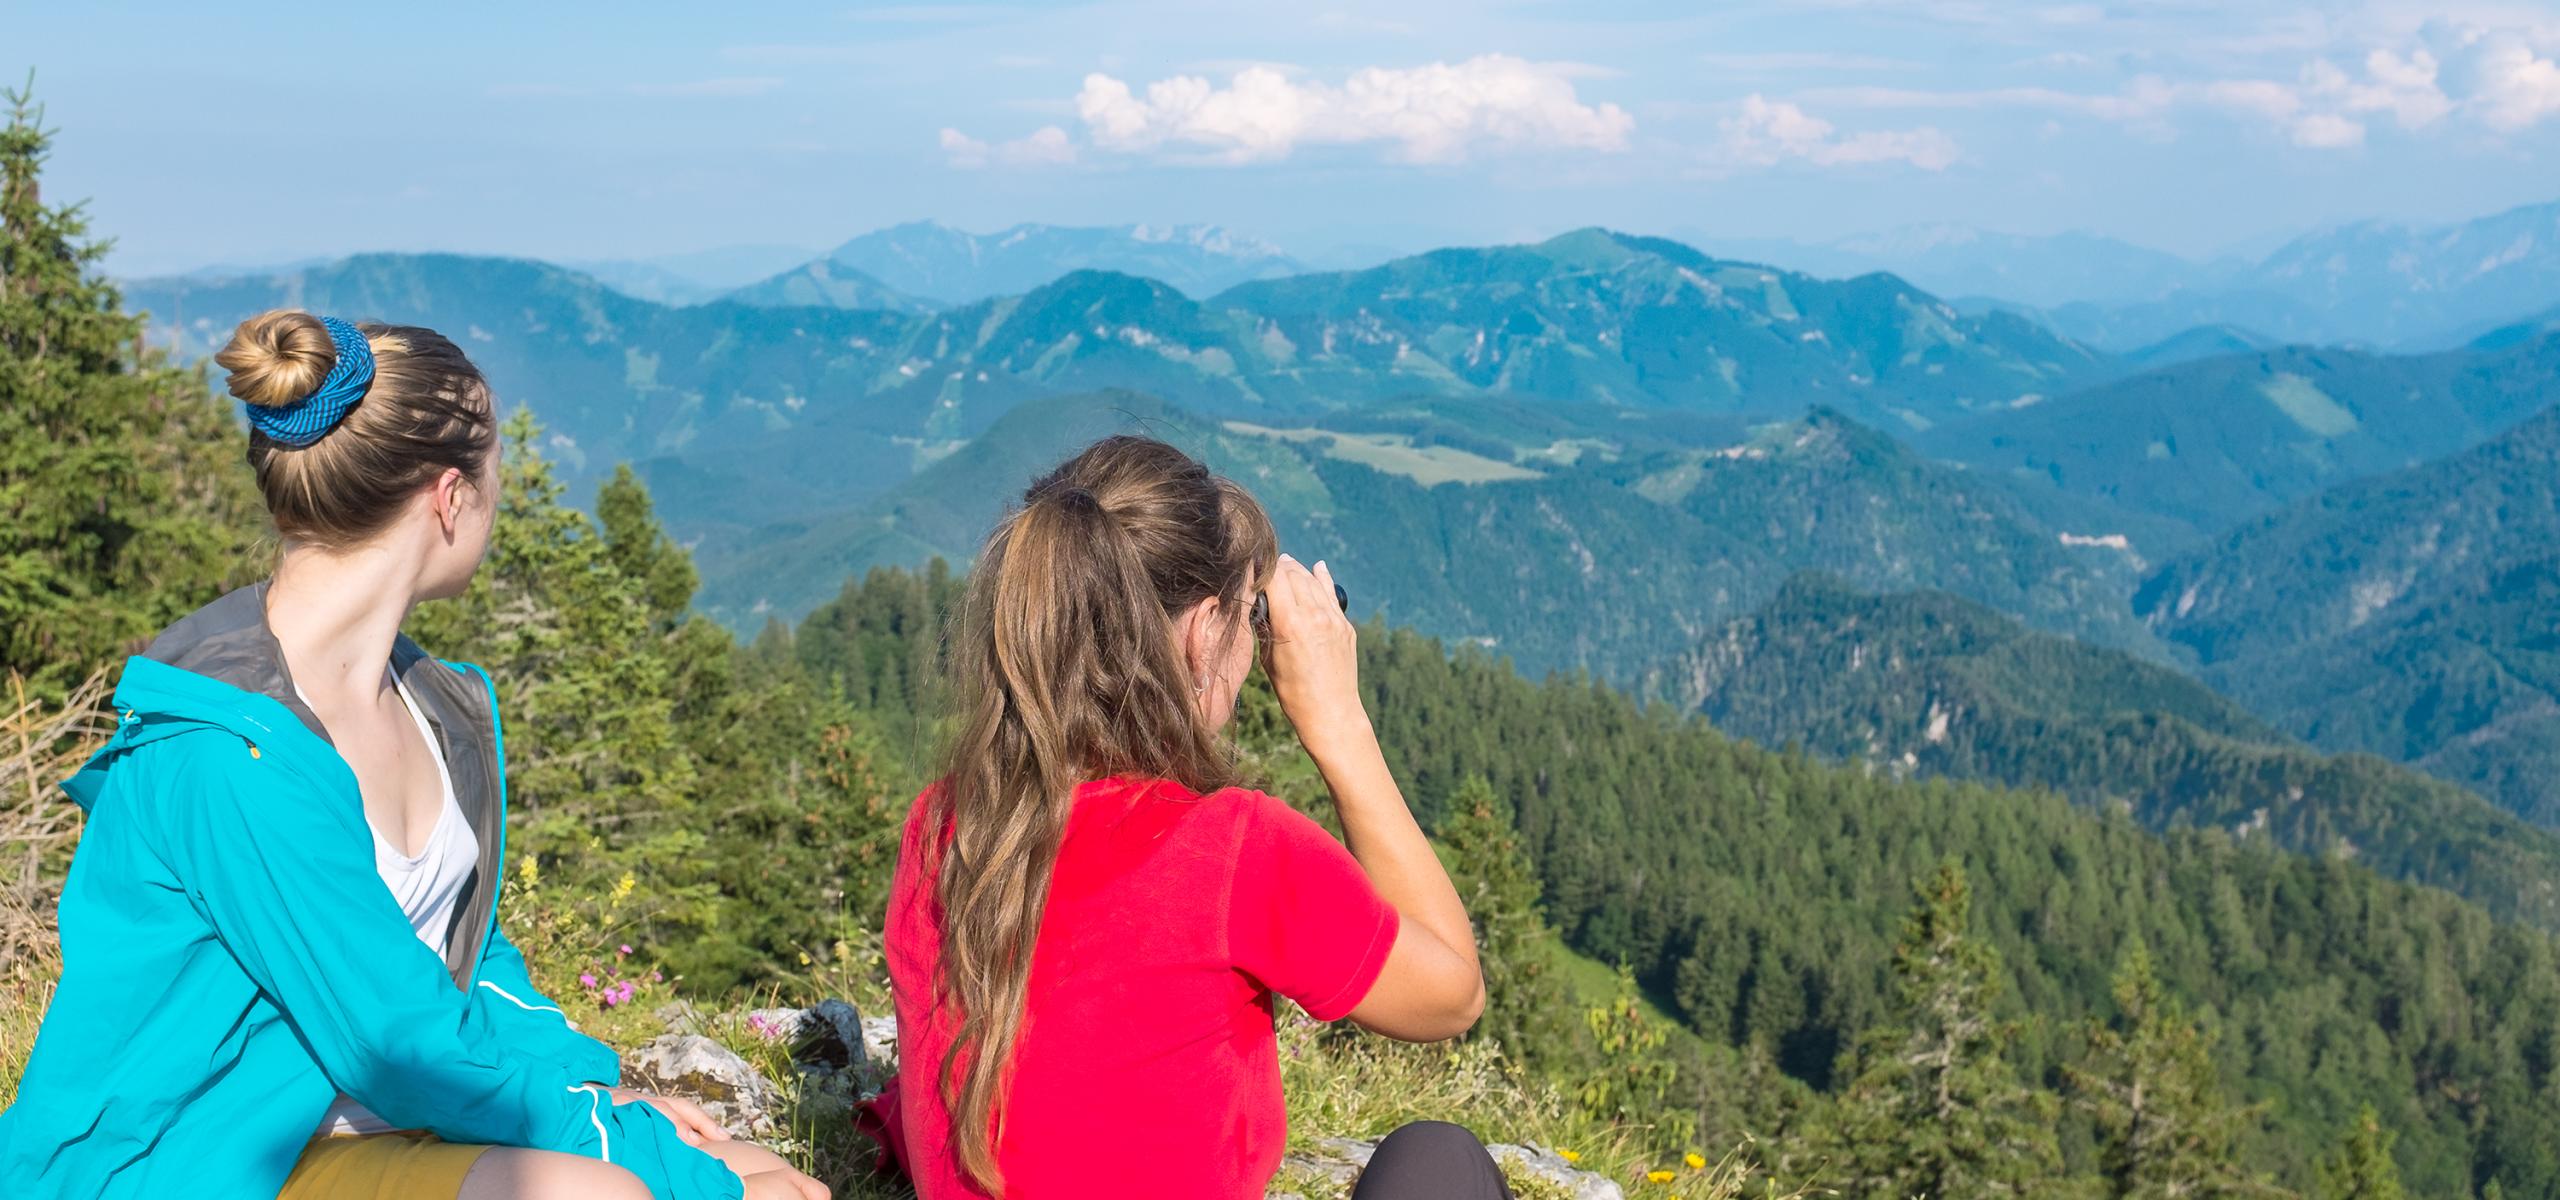 Dvě ženy sedí na vrcholu hory a pozorují horské panorama.